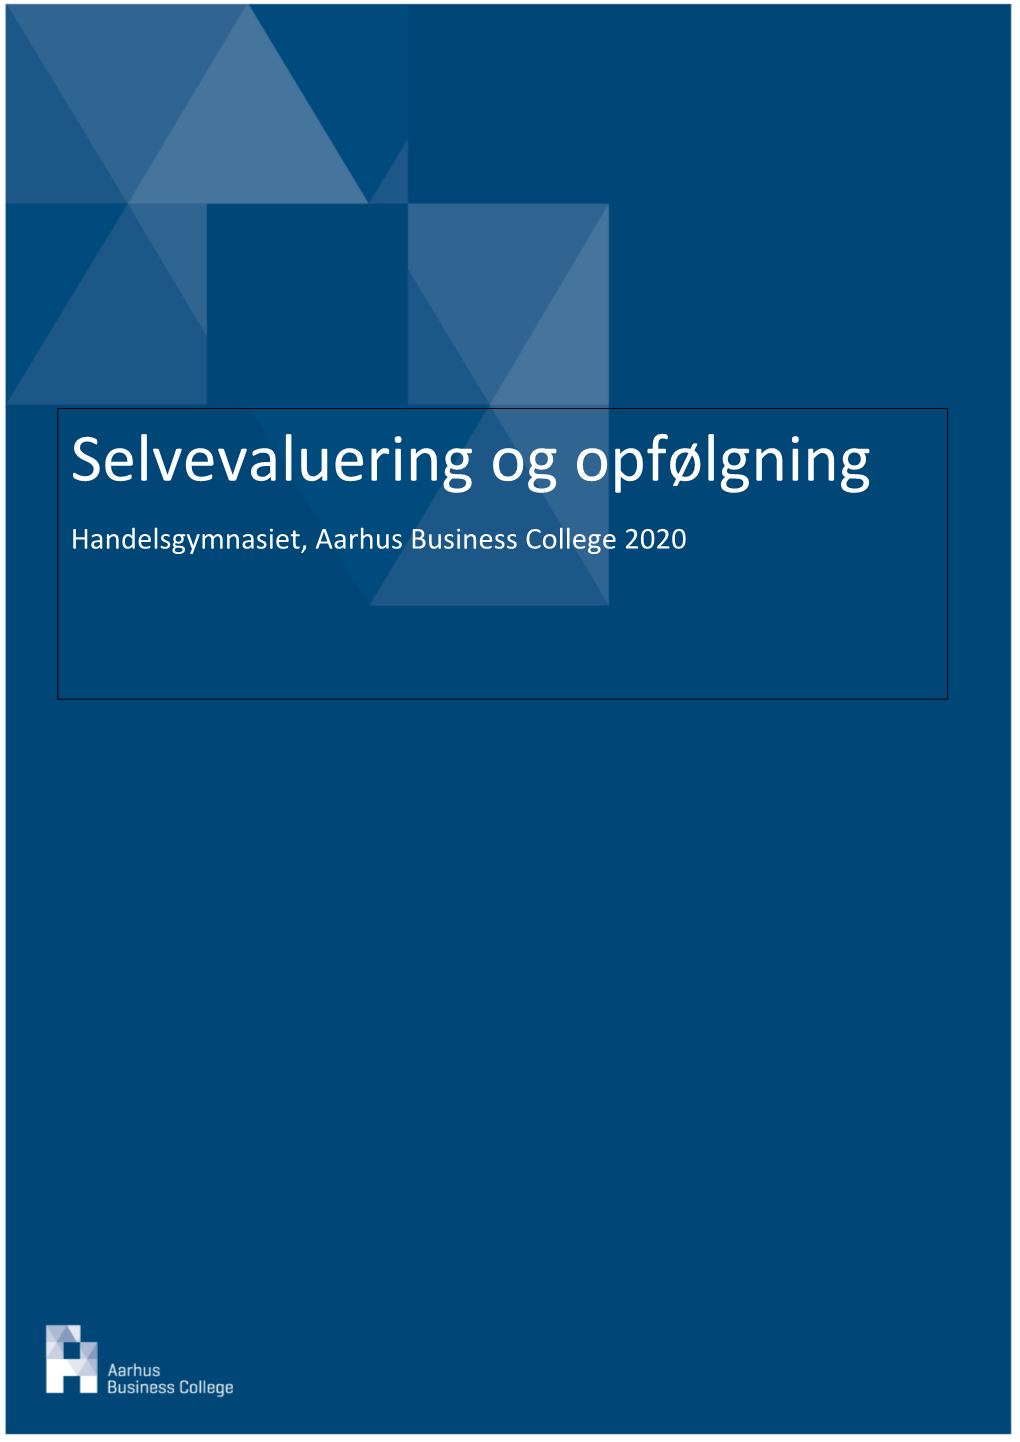 Selvevaluering Og Opfølgning Handelsgymnasiet, Aarhus Business College 2020